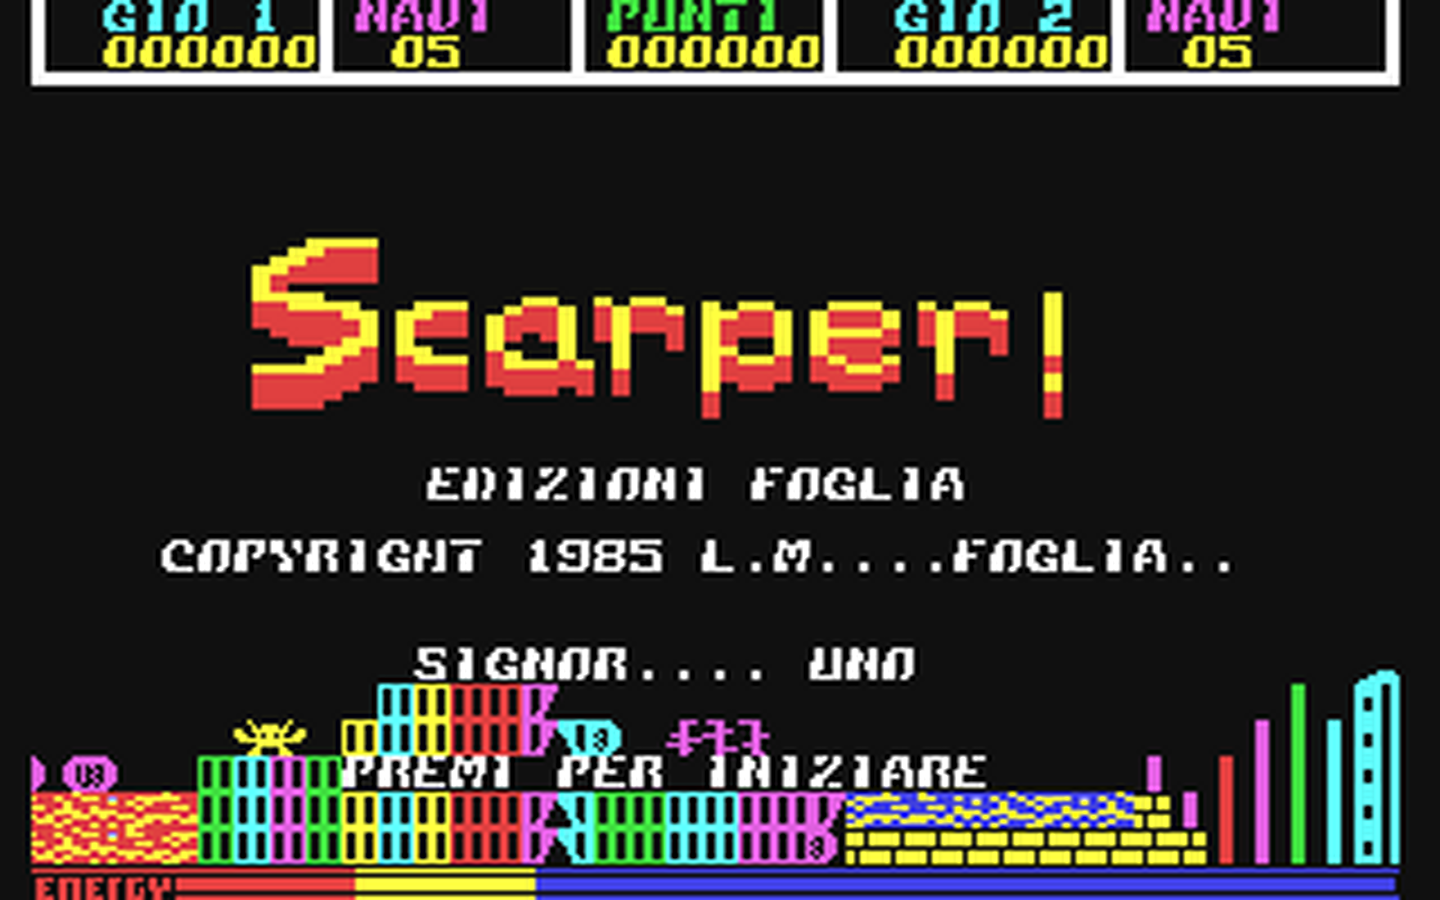 C64 GameBase Scarper! Linguaggio_Macchina/TuttoComputer 1985